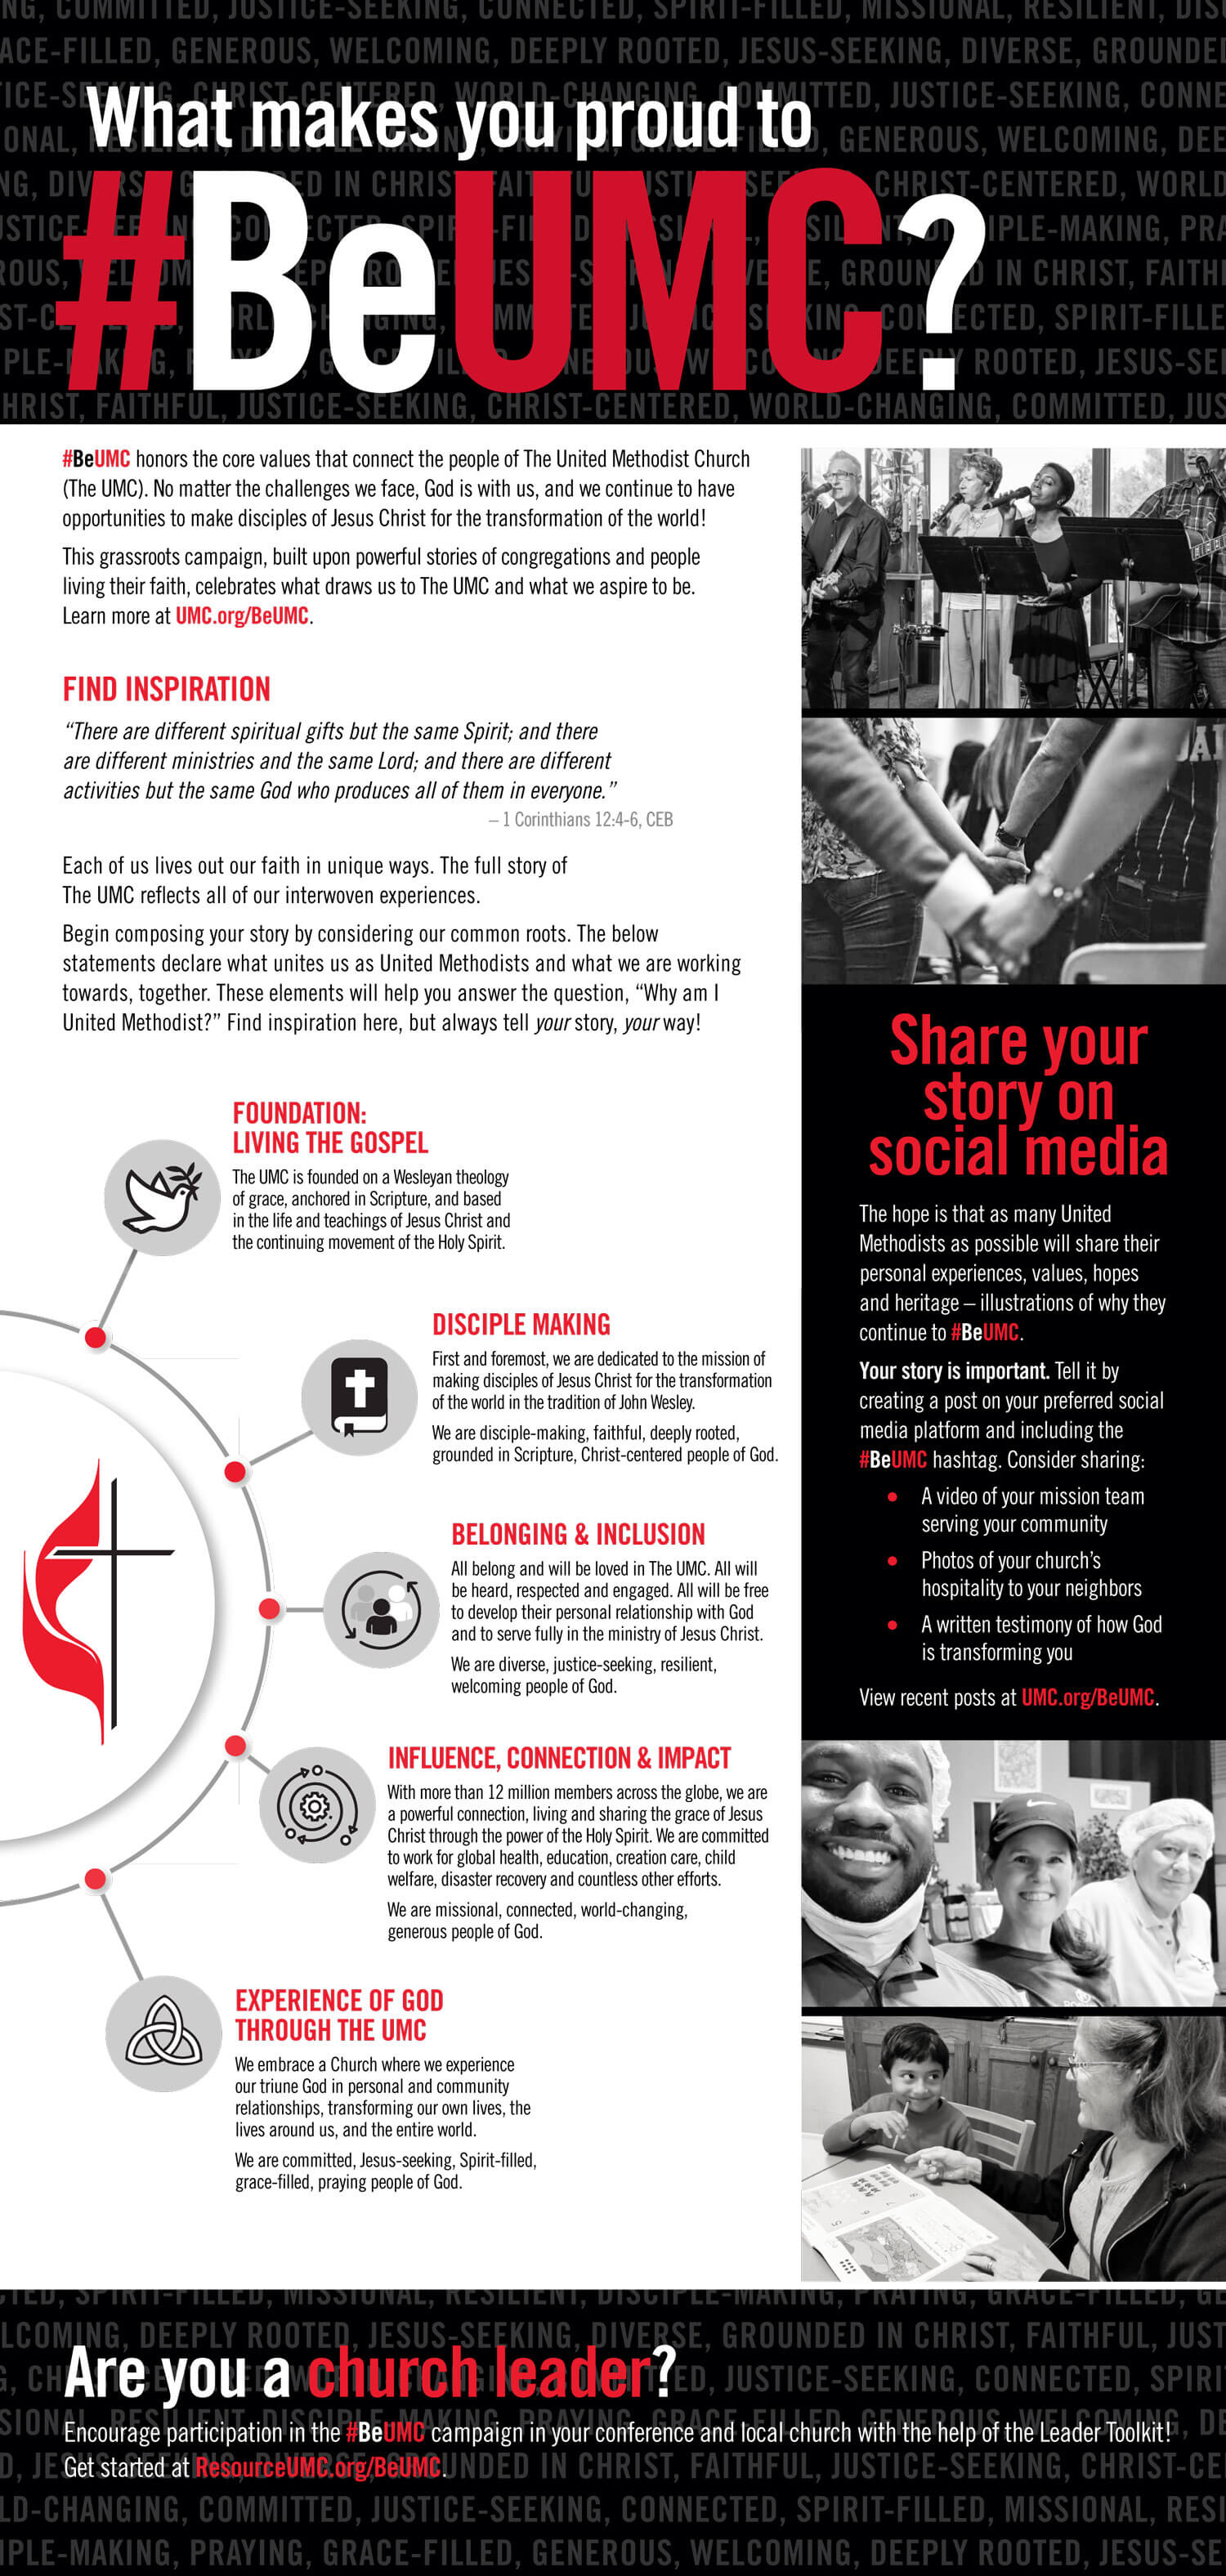 Infographic describing the #BeUMC social media campaign